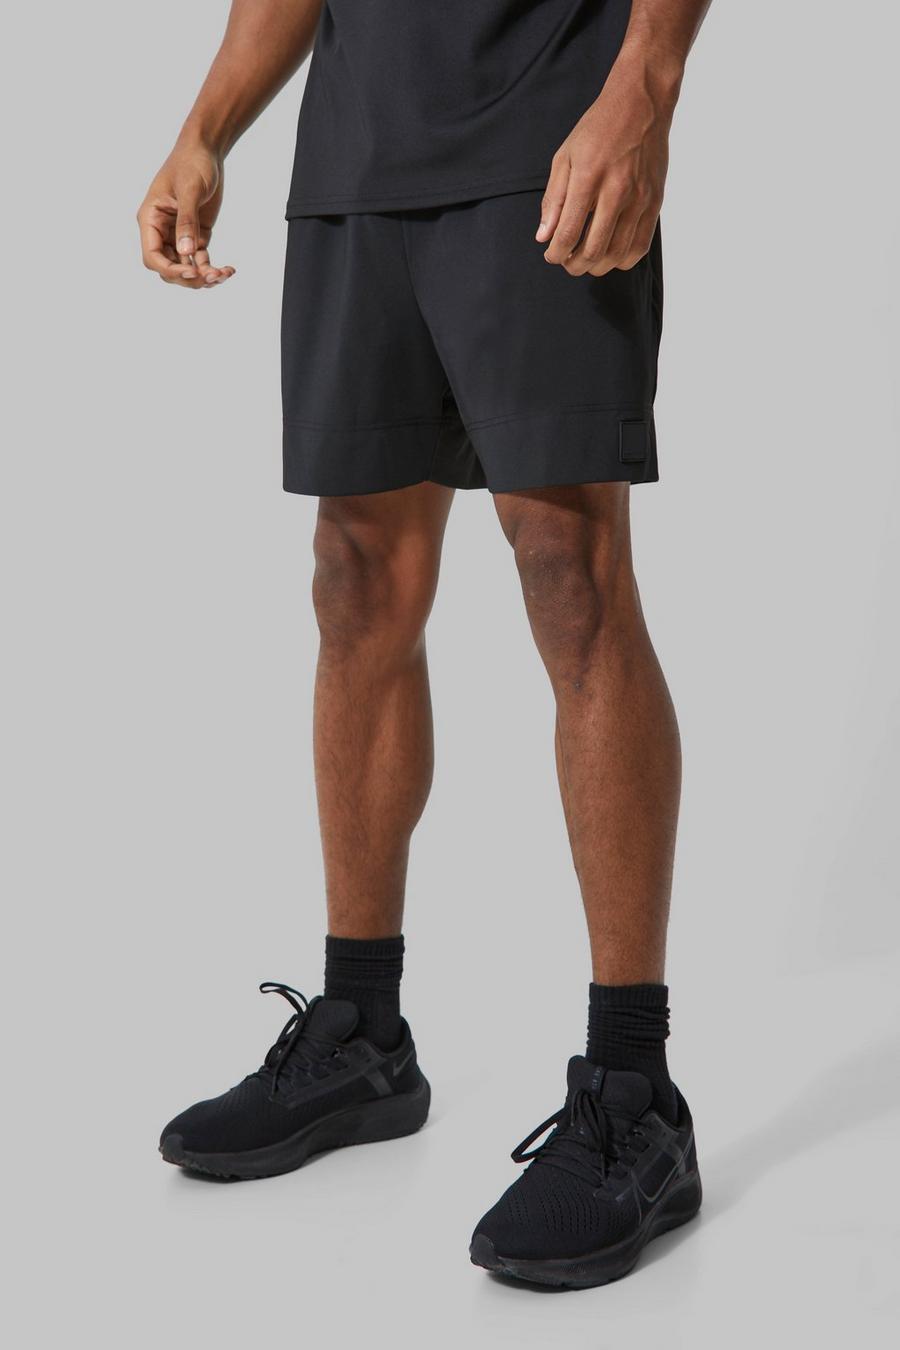 Pantalón corto MAN Active ajustado al músculo, Black nero